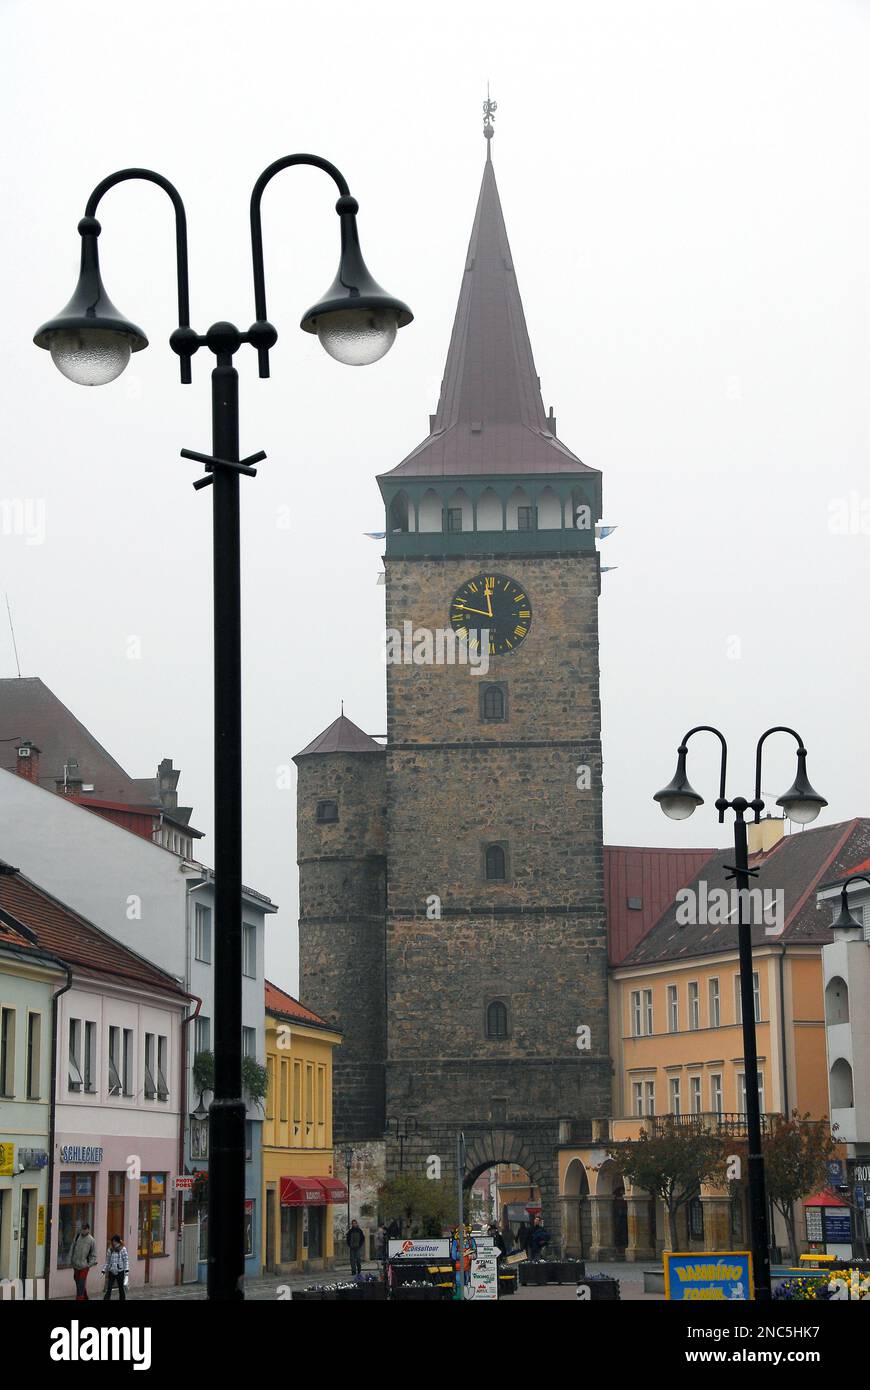 Valdice Gate, Valdická brána, Valdštejnovo Square, Jičín town, Hradec Králové Region, Czech Republic, Europe Stock Photo